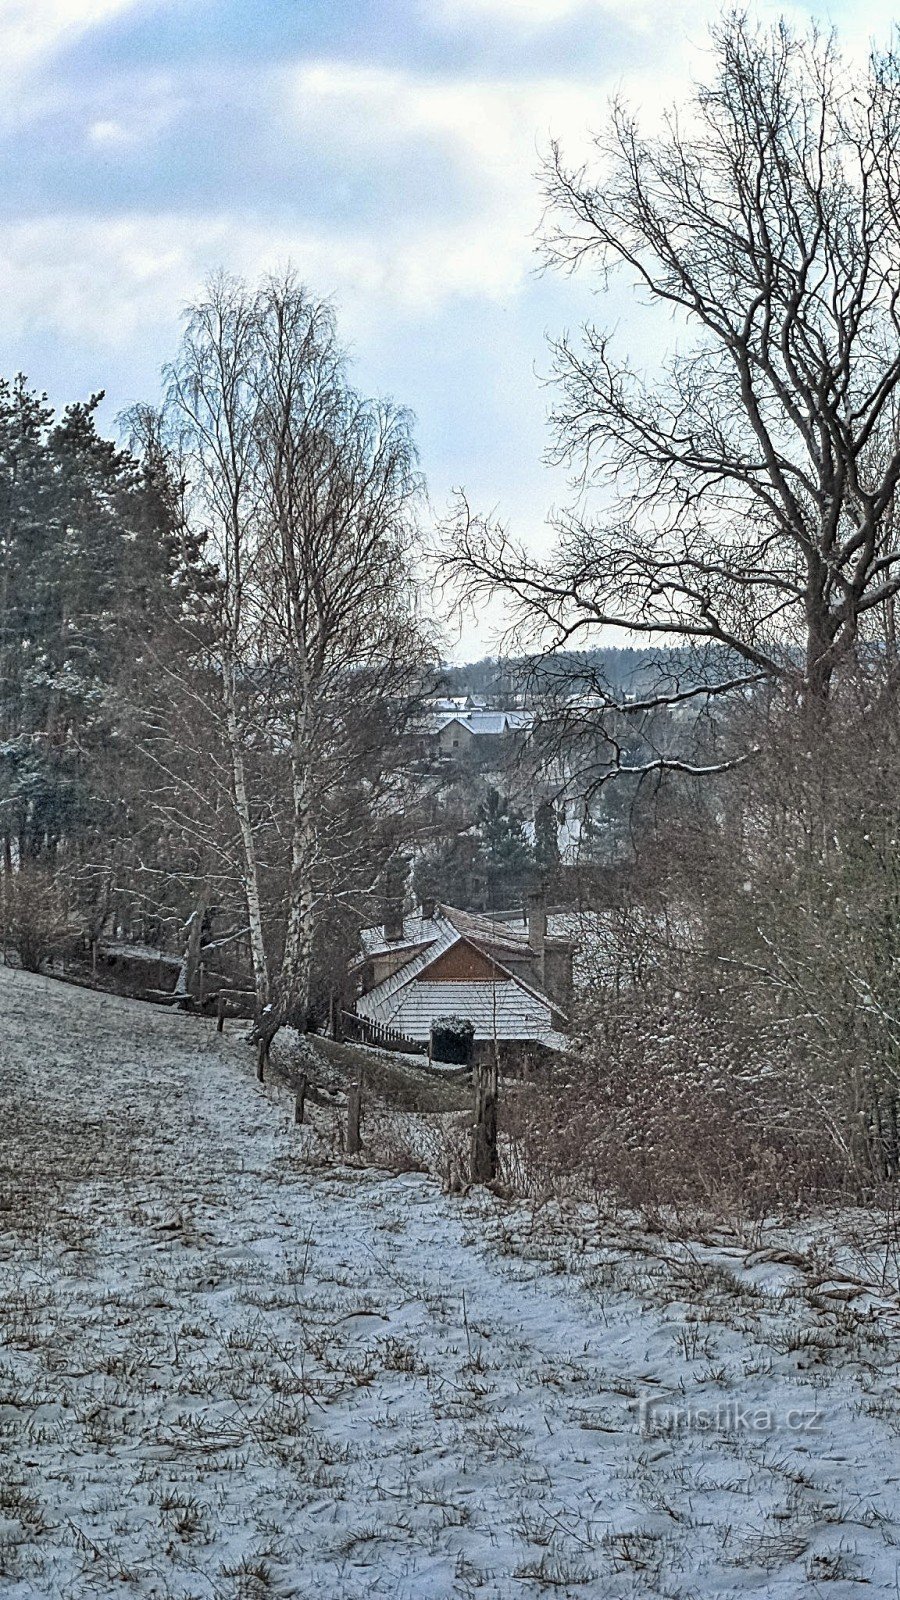 2.pohled na osadu Podvrdy v kouzelném závoji zimy